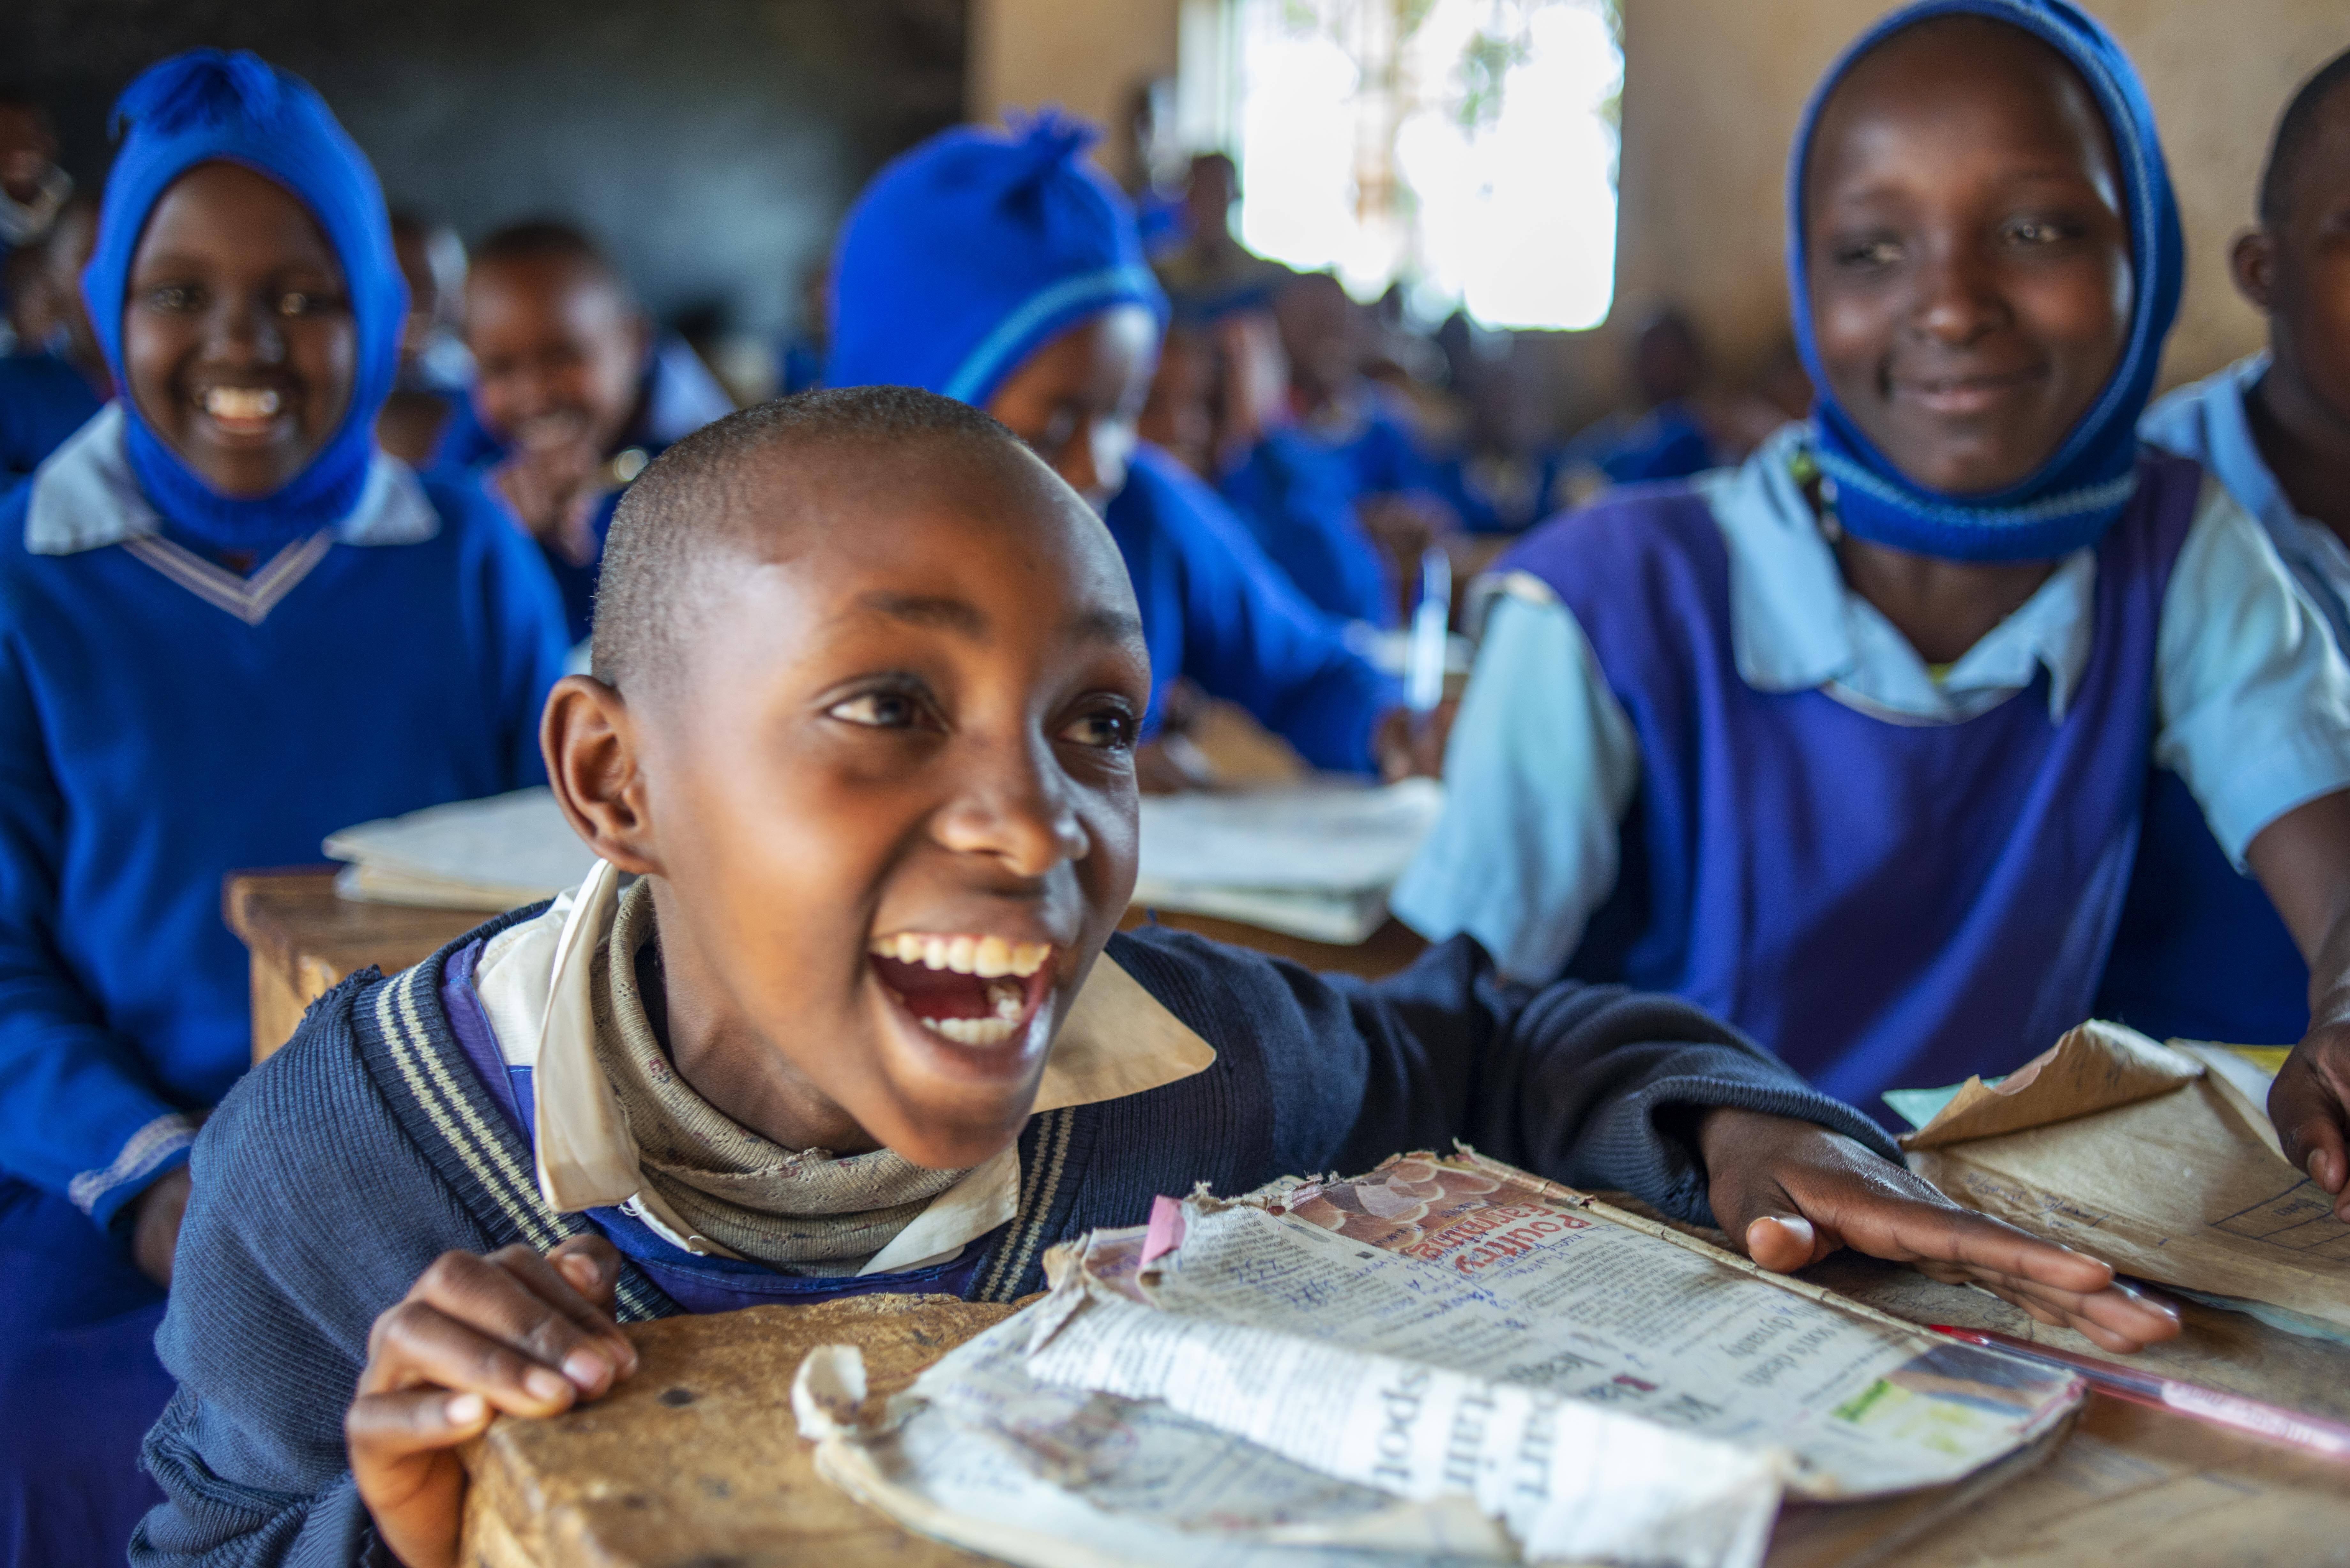 Schule in Kenia: Afrikas Bevölkerung ist unglaublich jung. Ein Potenzial, das Deutschland fördern sollte.